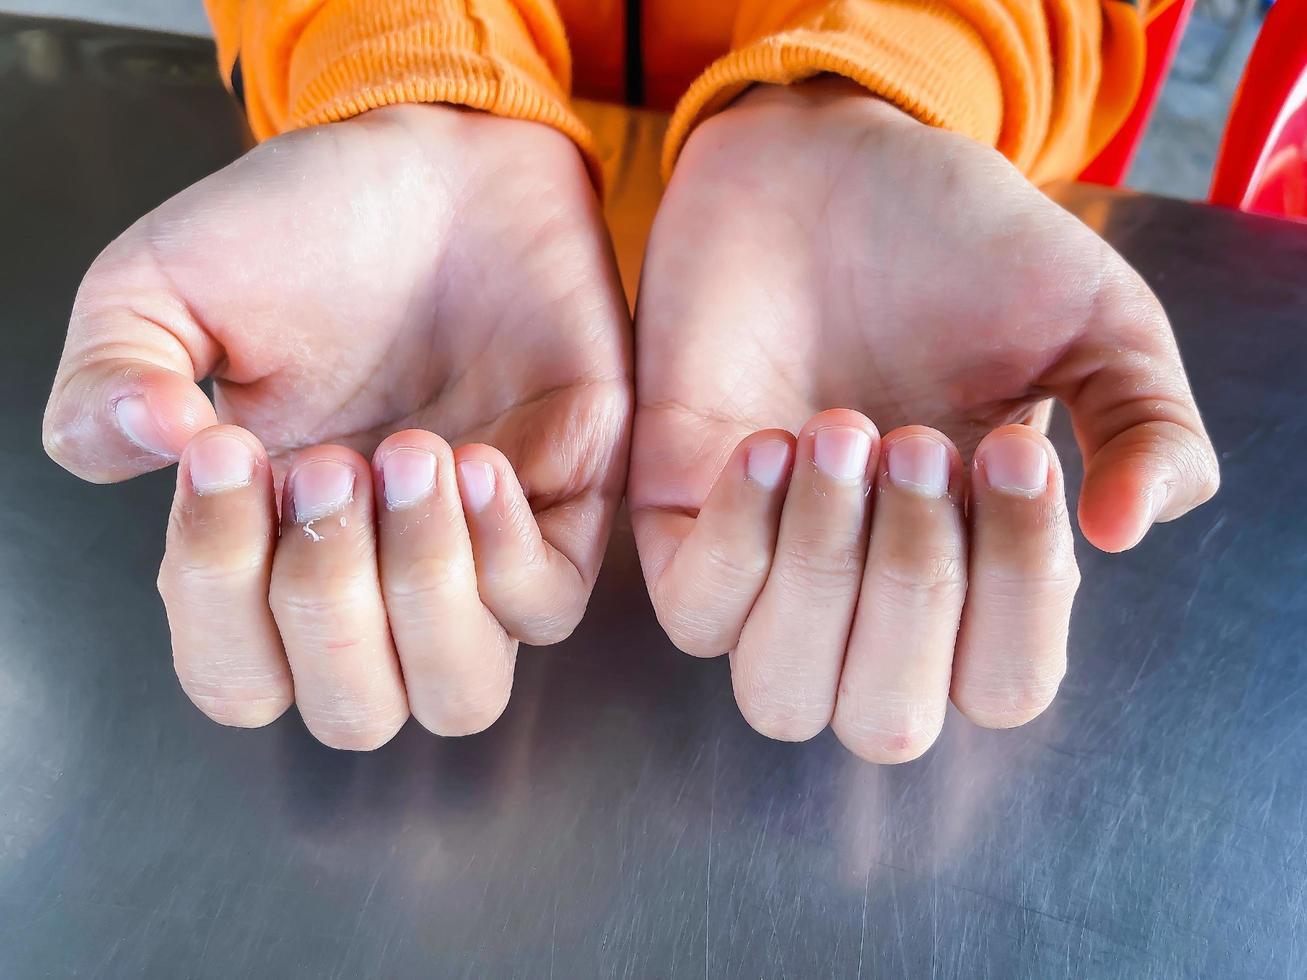 primer plano de los dedos de la piel agrietada que se pelan en seco, las uñas de la mano de una mujer joven. descamación de la piel debido a una reacción alérgica. foto